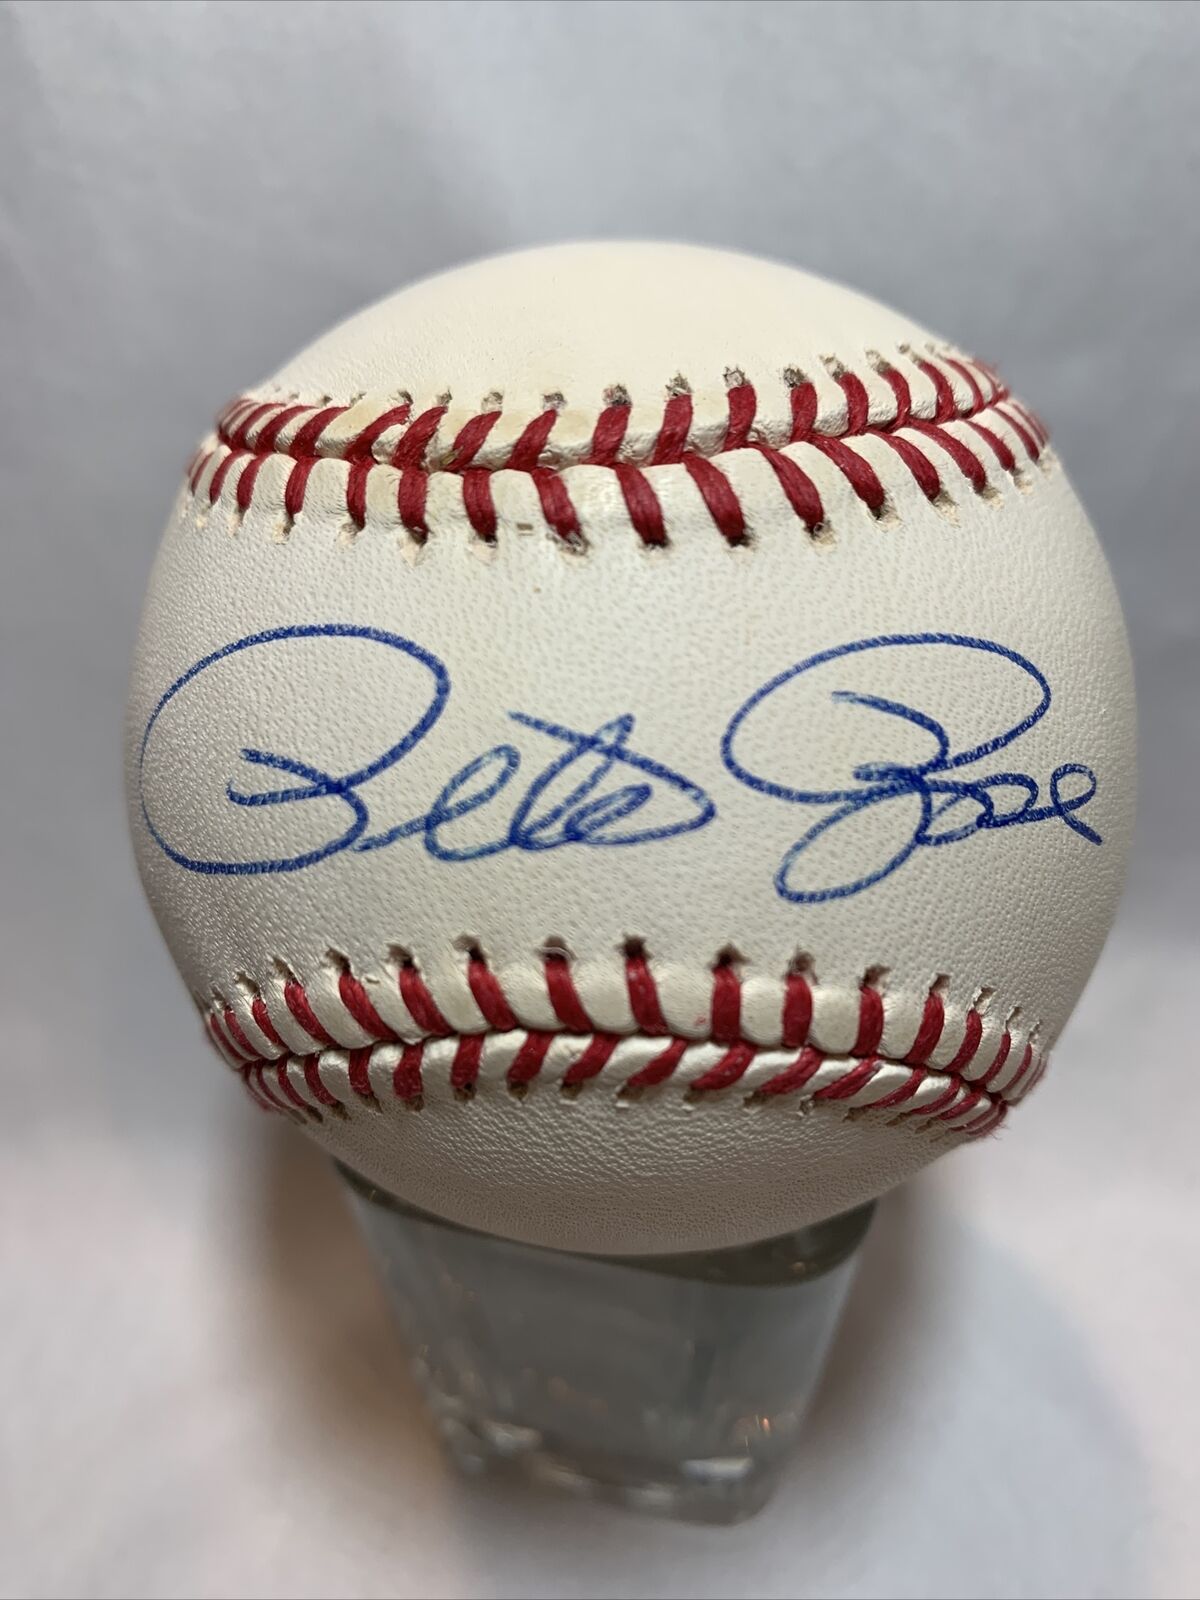 Pete Rose Cincinnati Reds Baseball Autographed with COA